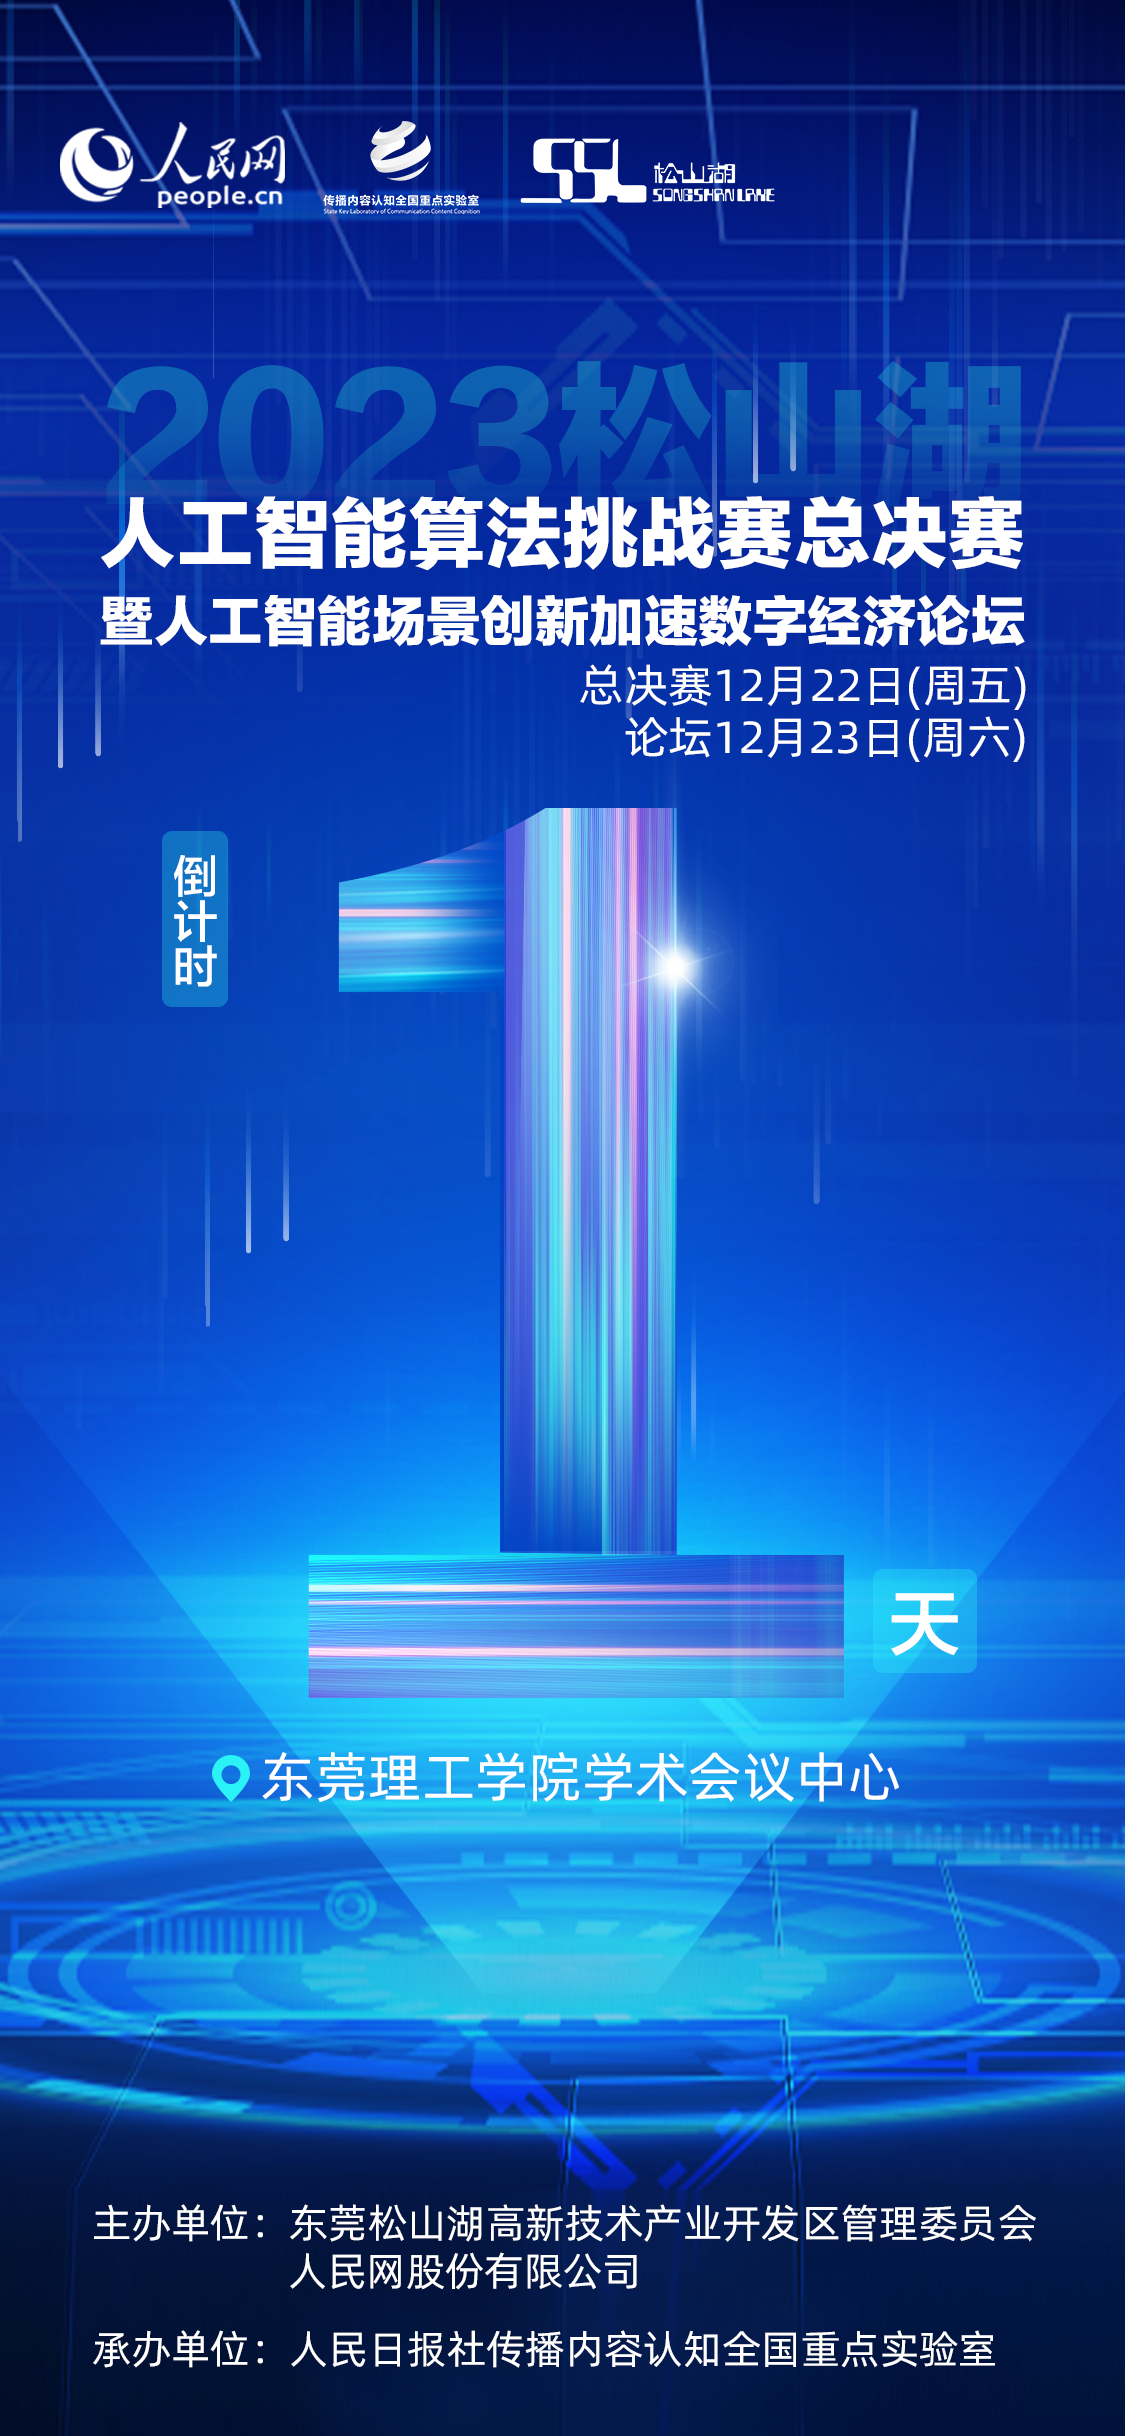 2023松山湖野生智能算法应战赛总决赛来日诰日举办(图2)